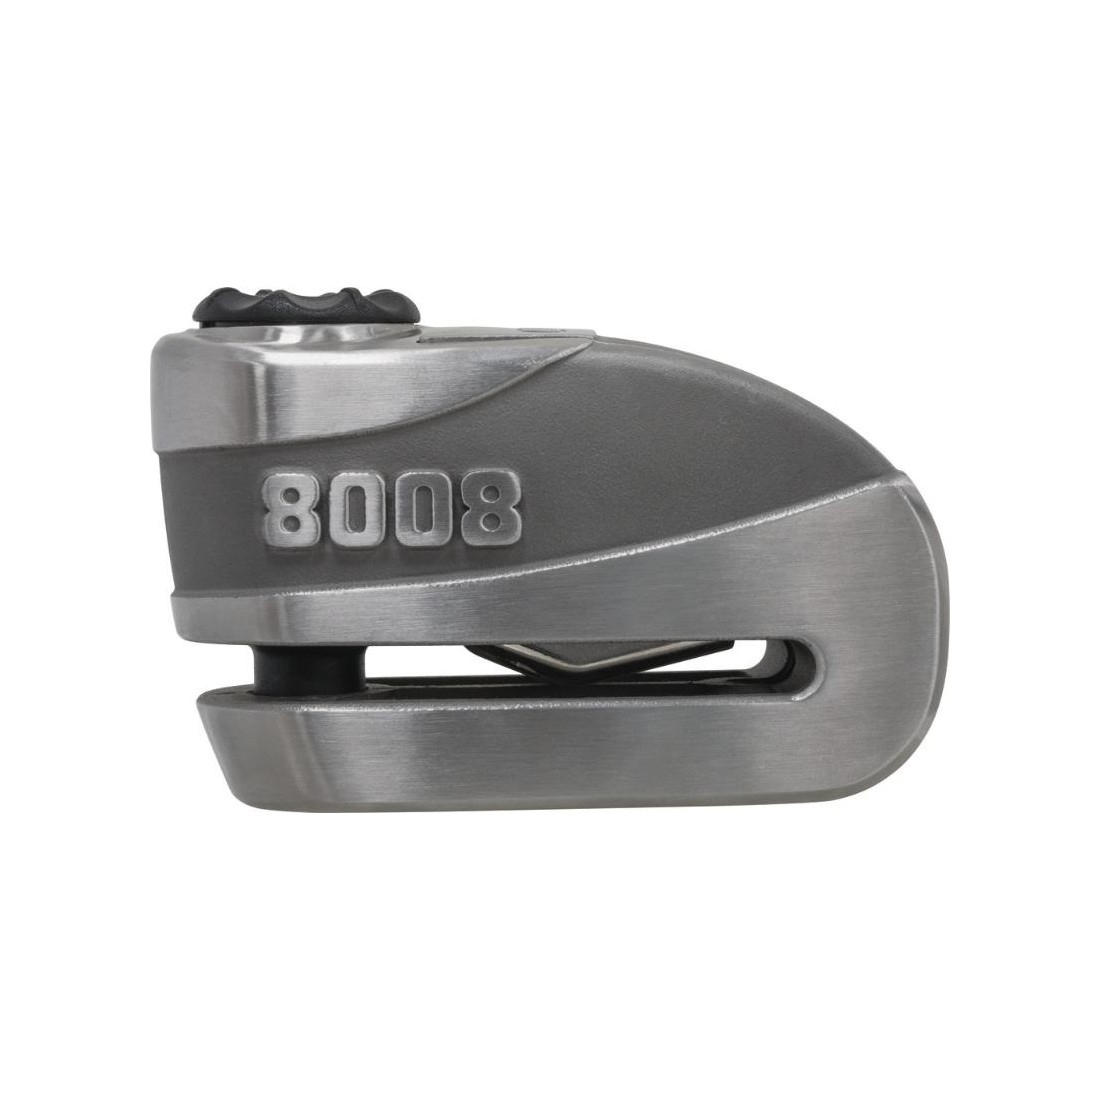 Antirrobo Disco Alarma Abus 8008 GRANIT DETECTO X-PLUS 2.0 3D